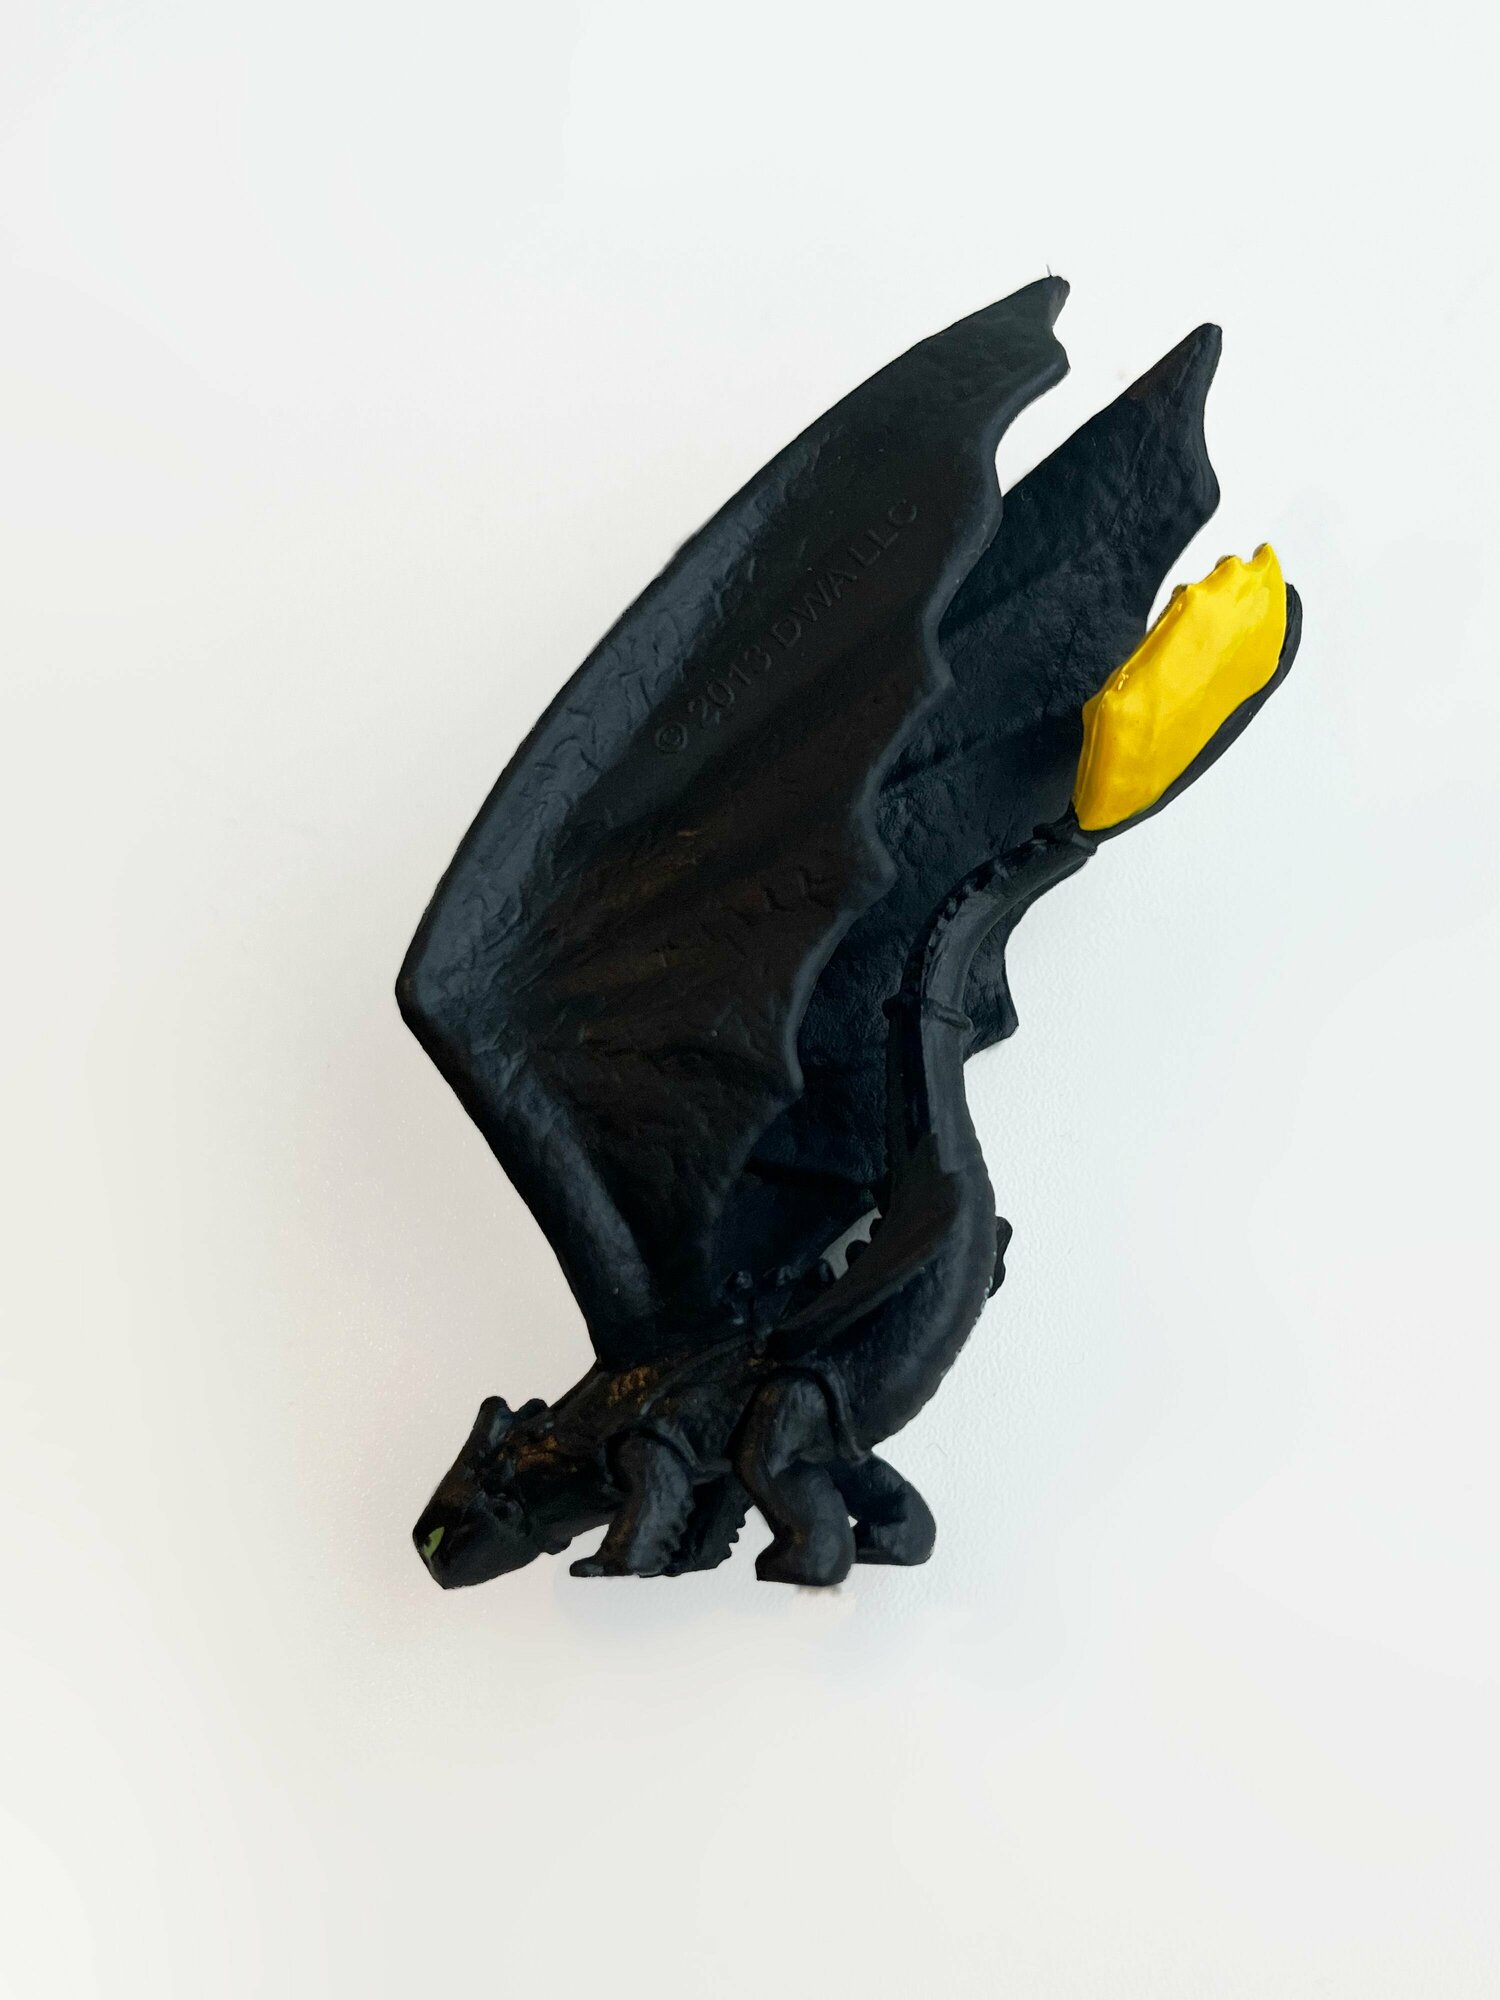 Как приручить дракона 66562 Мини-фигурки №16 - Беззубик с желтым хвостом